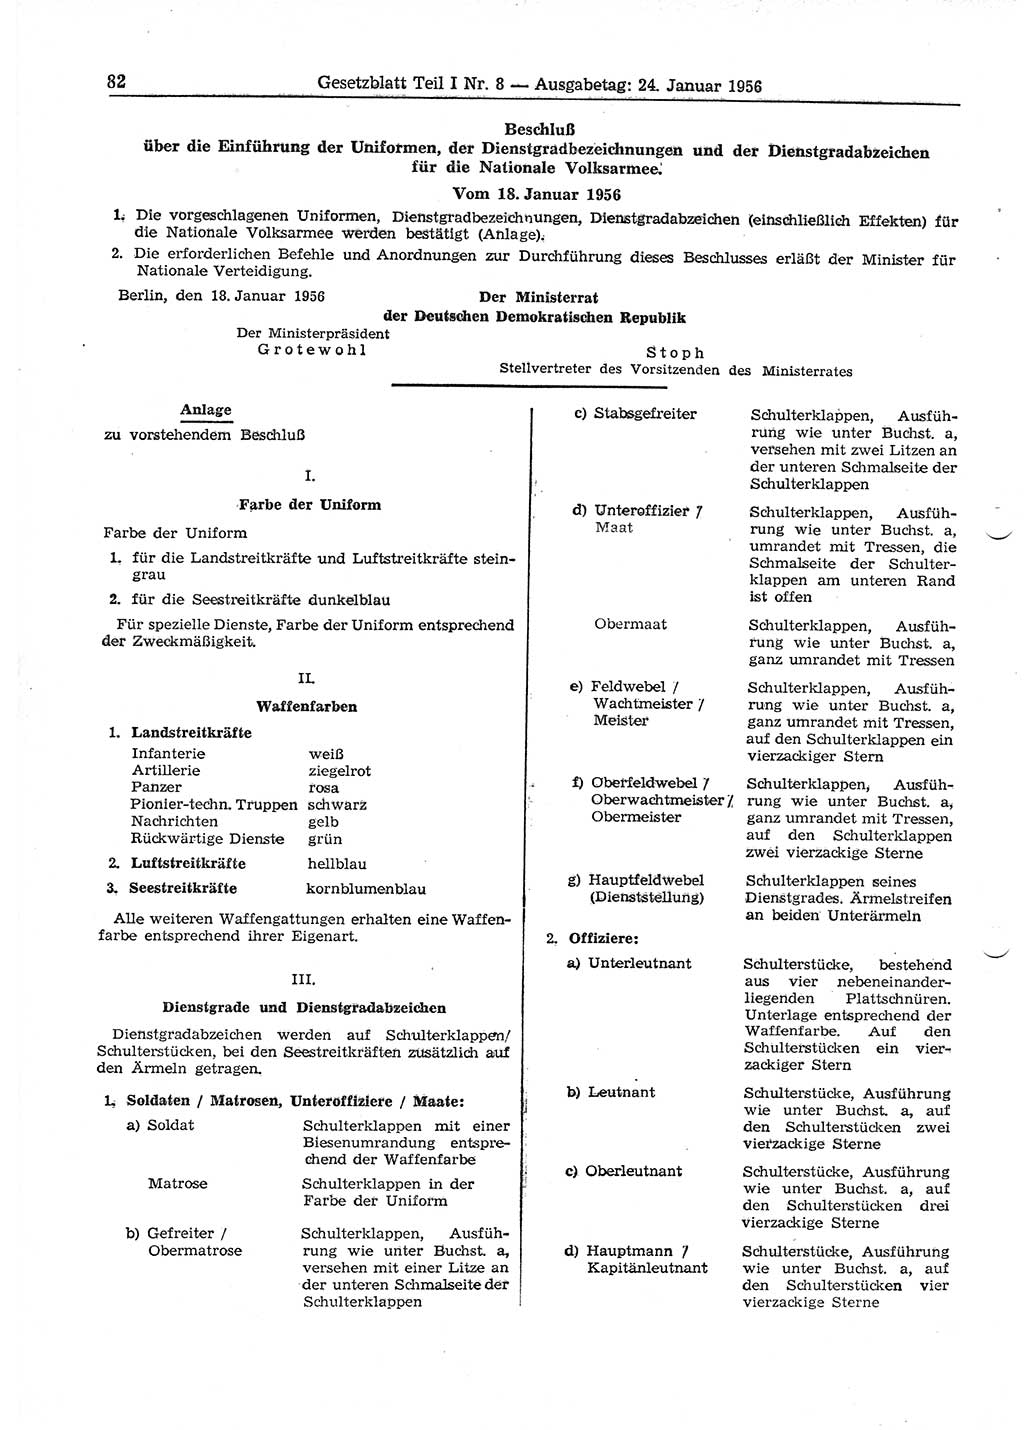 Gesetzblatt (GBl.) der Deutschen Demokratischen Republik (DDR) Teil Ⅰ 1956, Seite 82 (GBl. DDR Ⅰ 1956, S. 82)